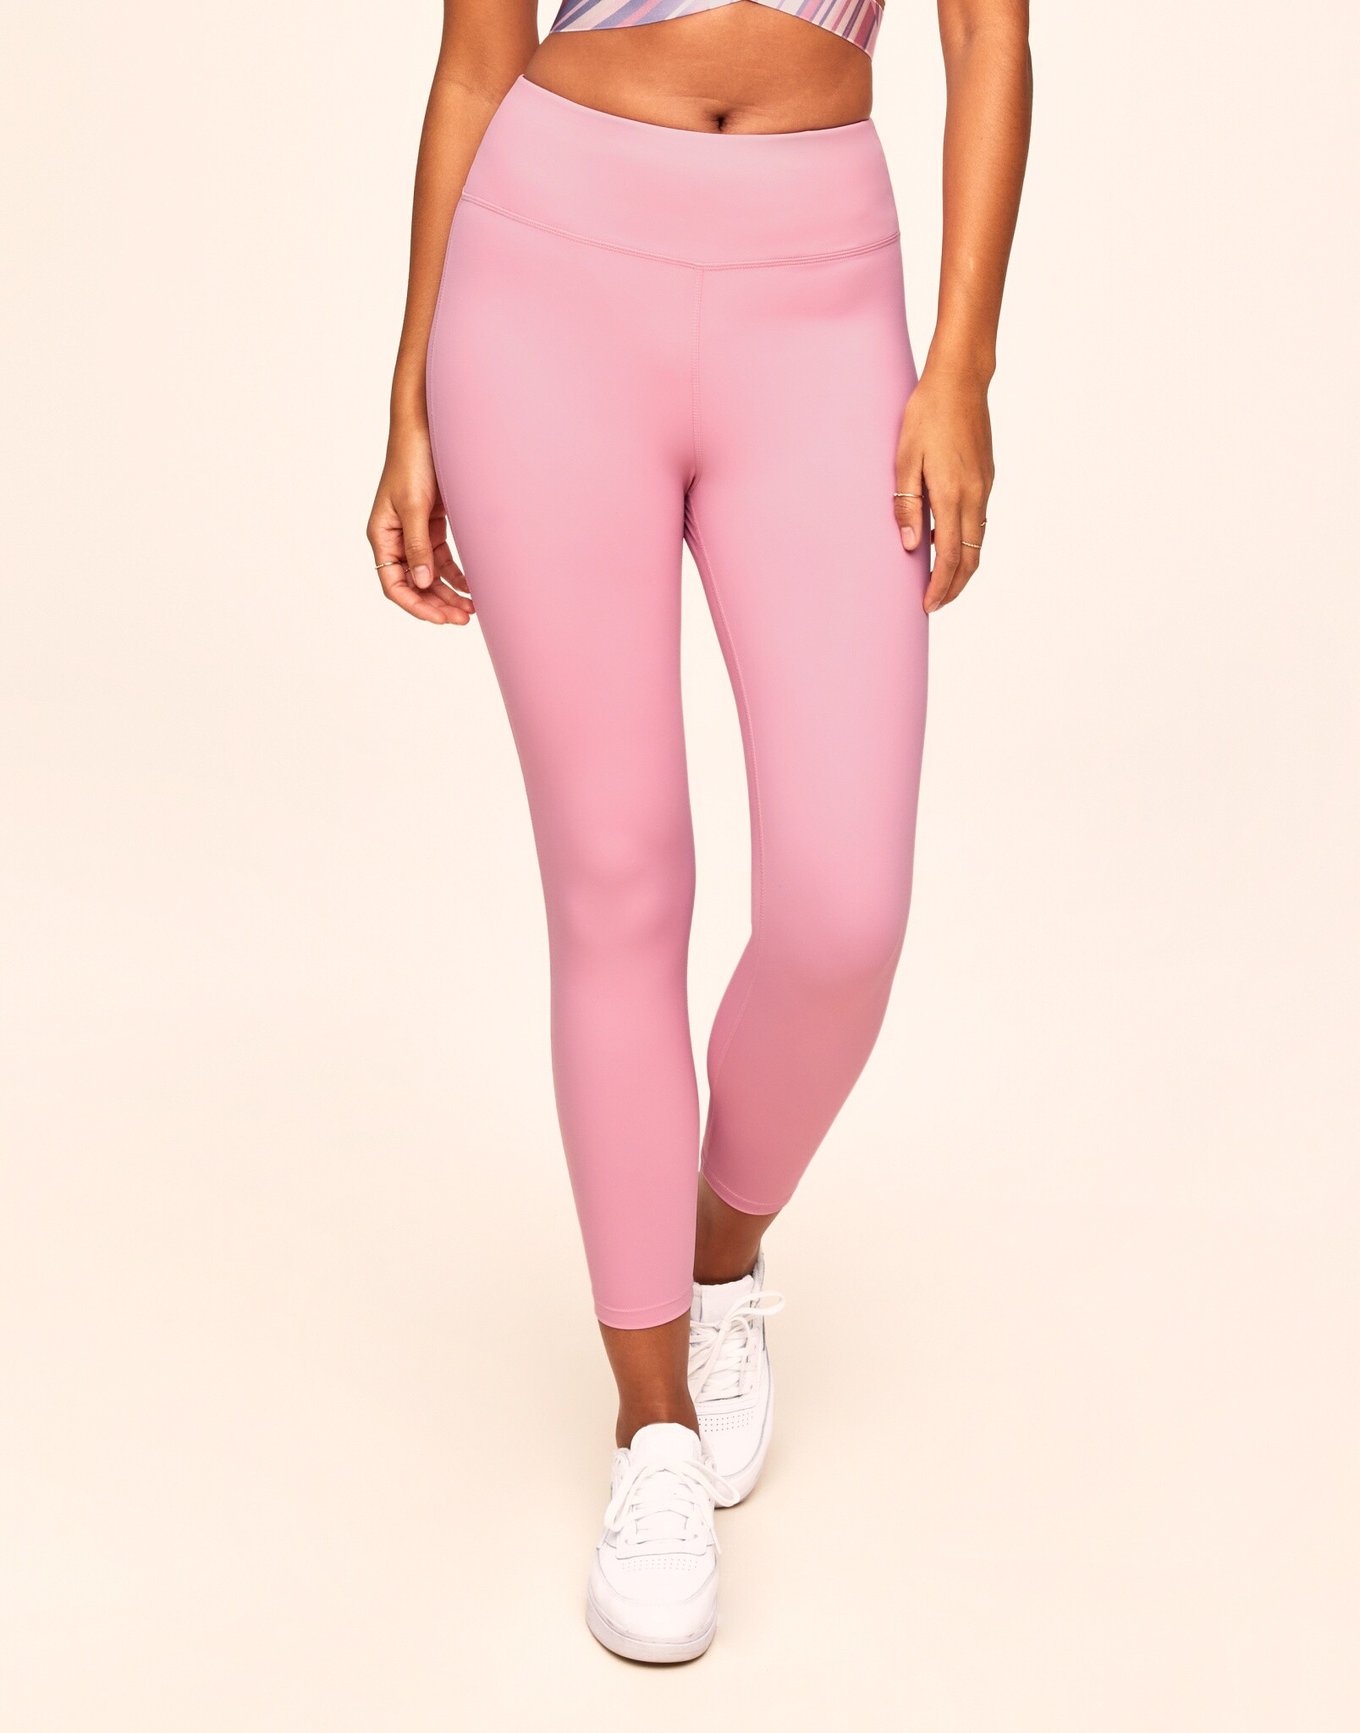 PINK Victoria's Secret, Intimates & Sleepwear, Pink Victorias Secret  Hidden Pocket Sports Bra Size Small